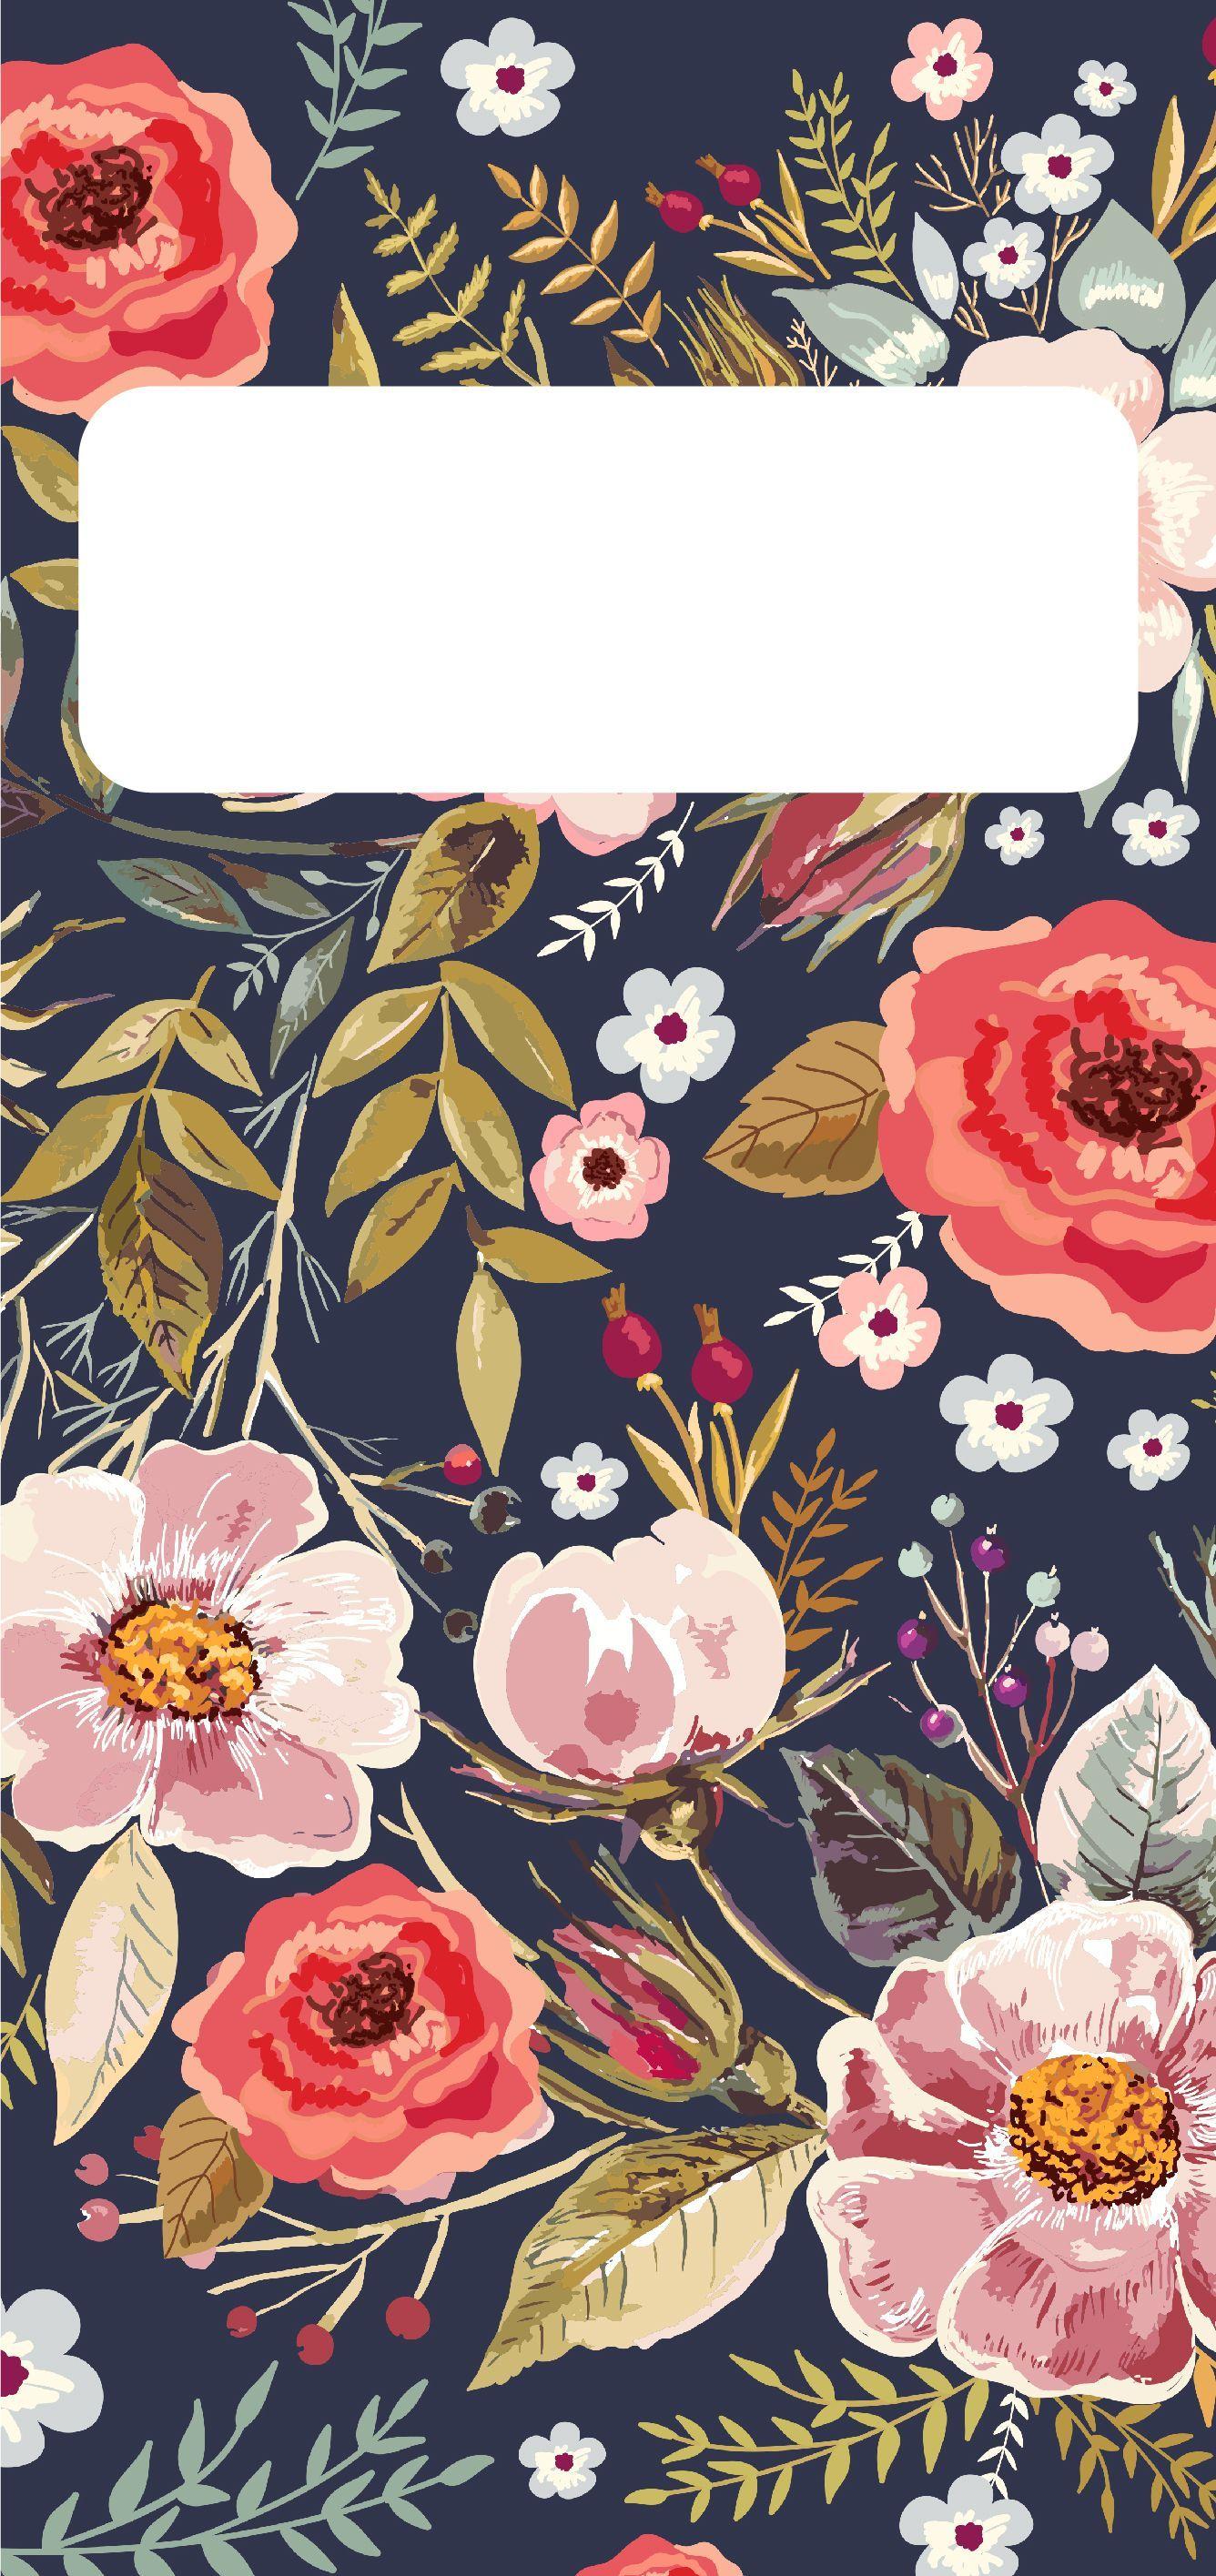 28 Fall Flowers iPhone Wallpapers  WallpaperSafari